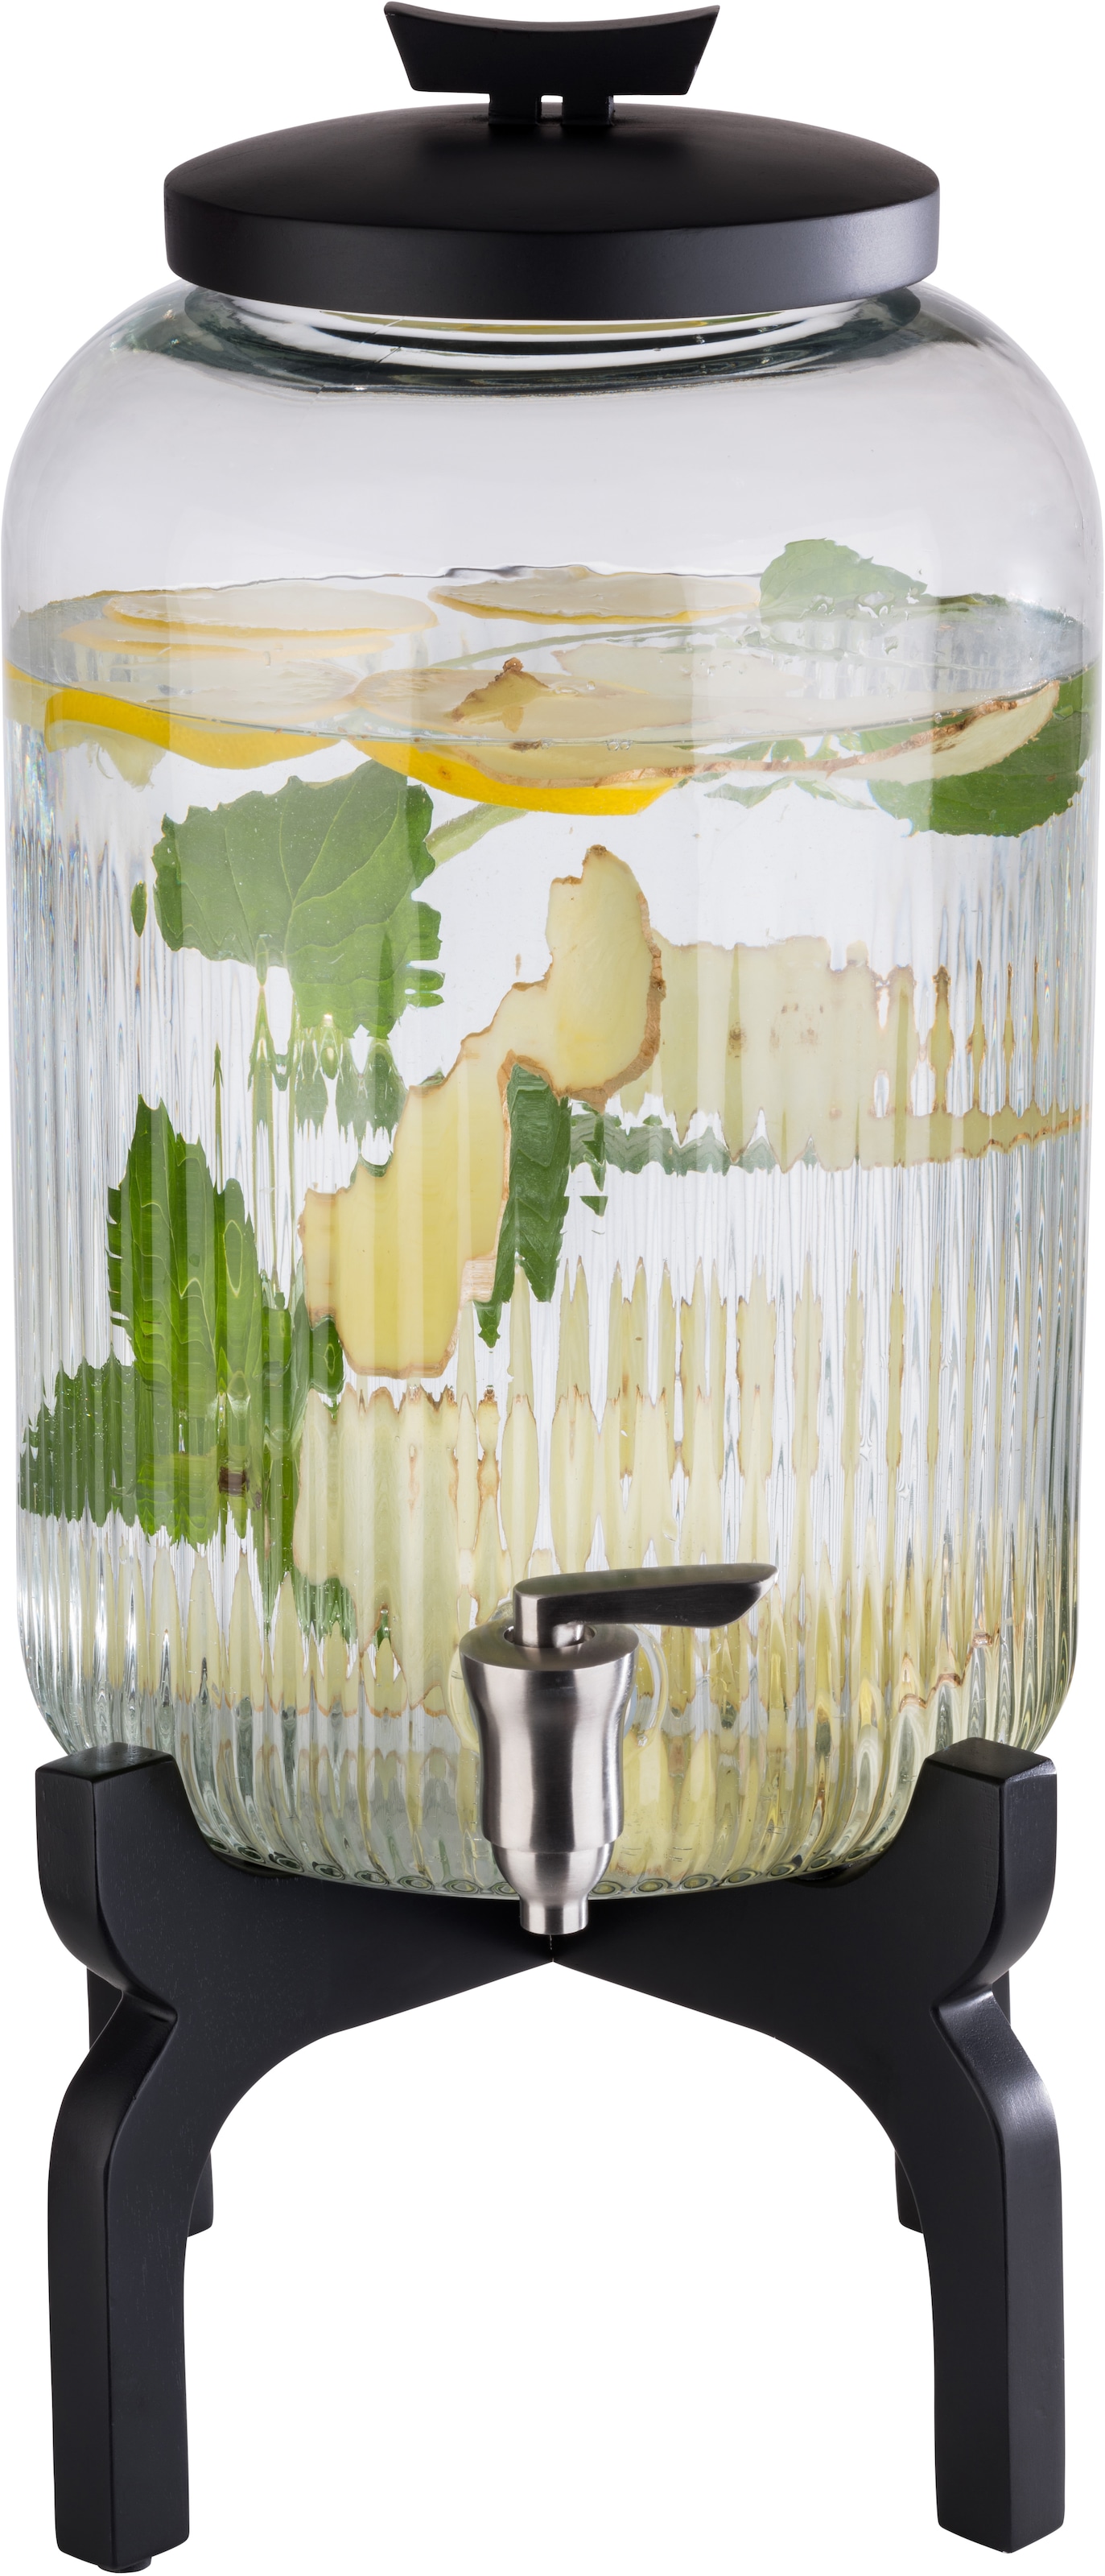 APS Getränkespender »Asia«, Behälter aus Glas, Zapfhahn aus Edelstahl, 7 Liter Fassungsvermögen